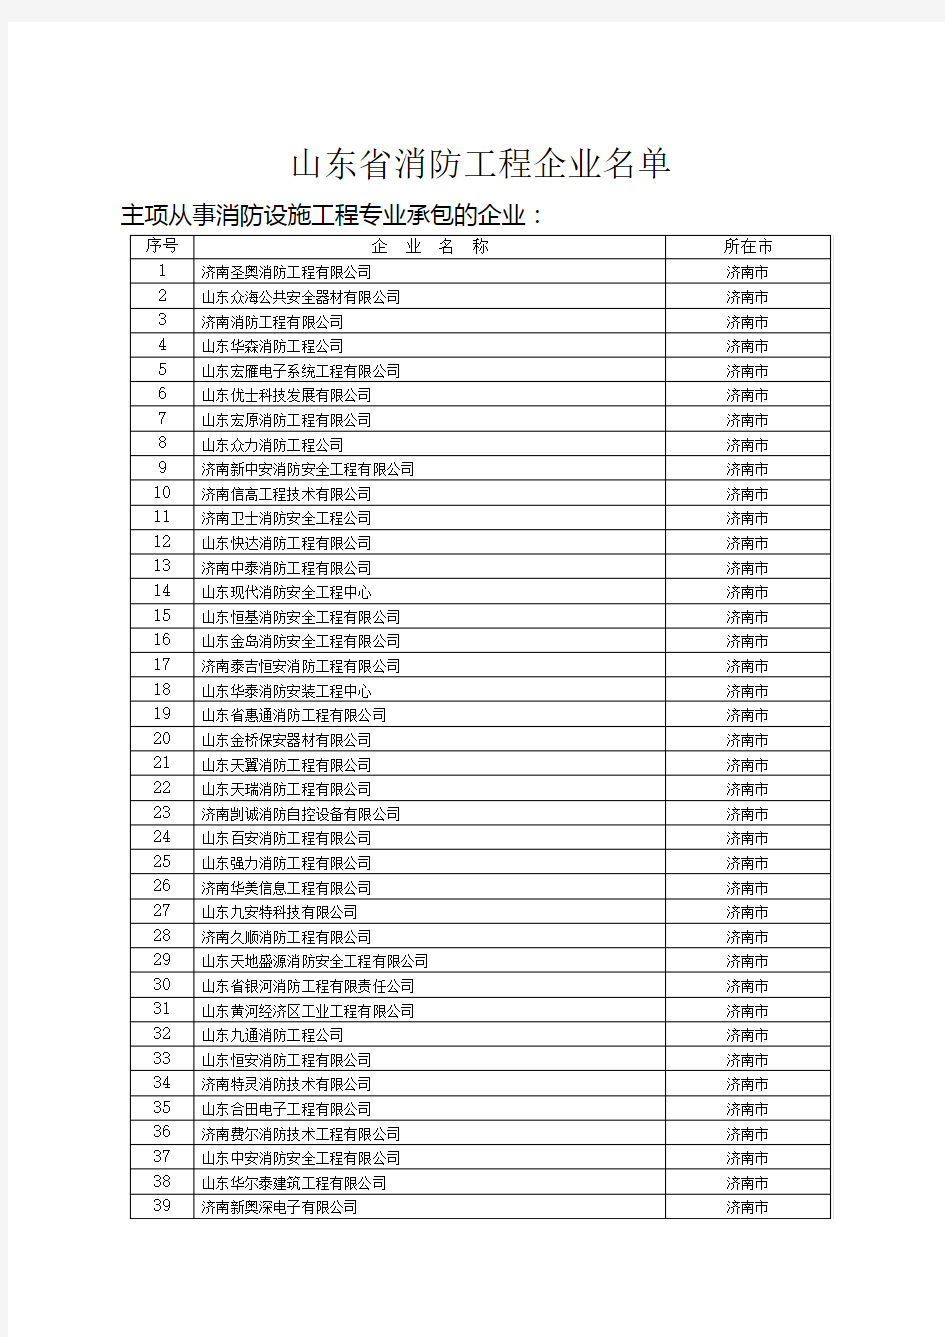 济南市全部消防工程企业名单